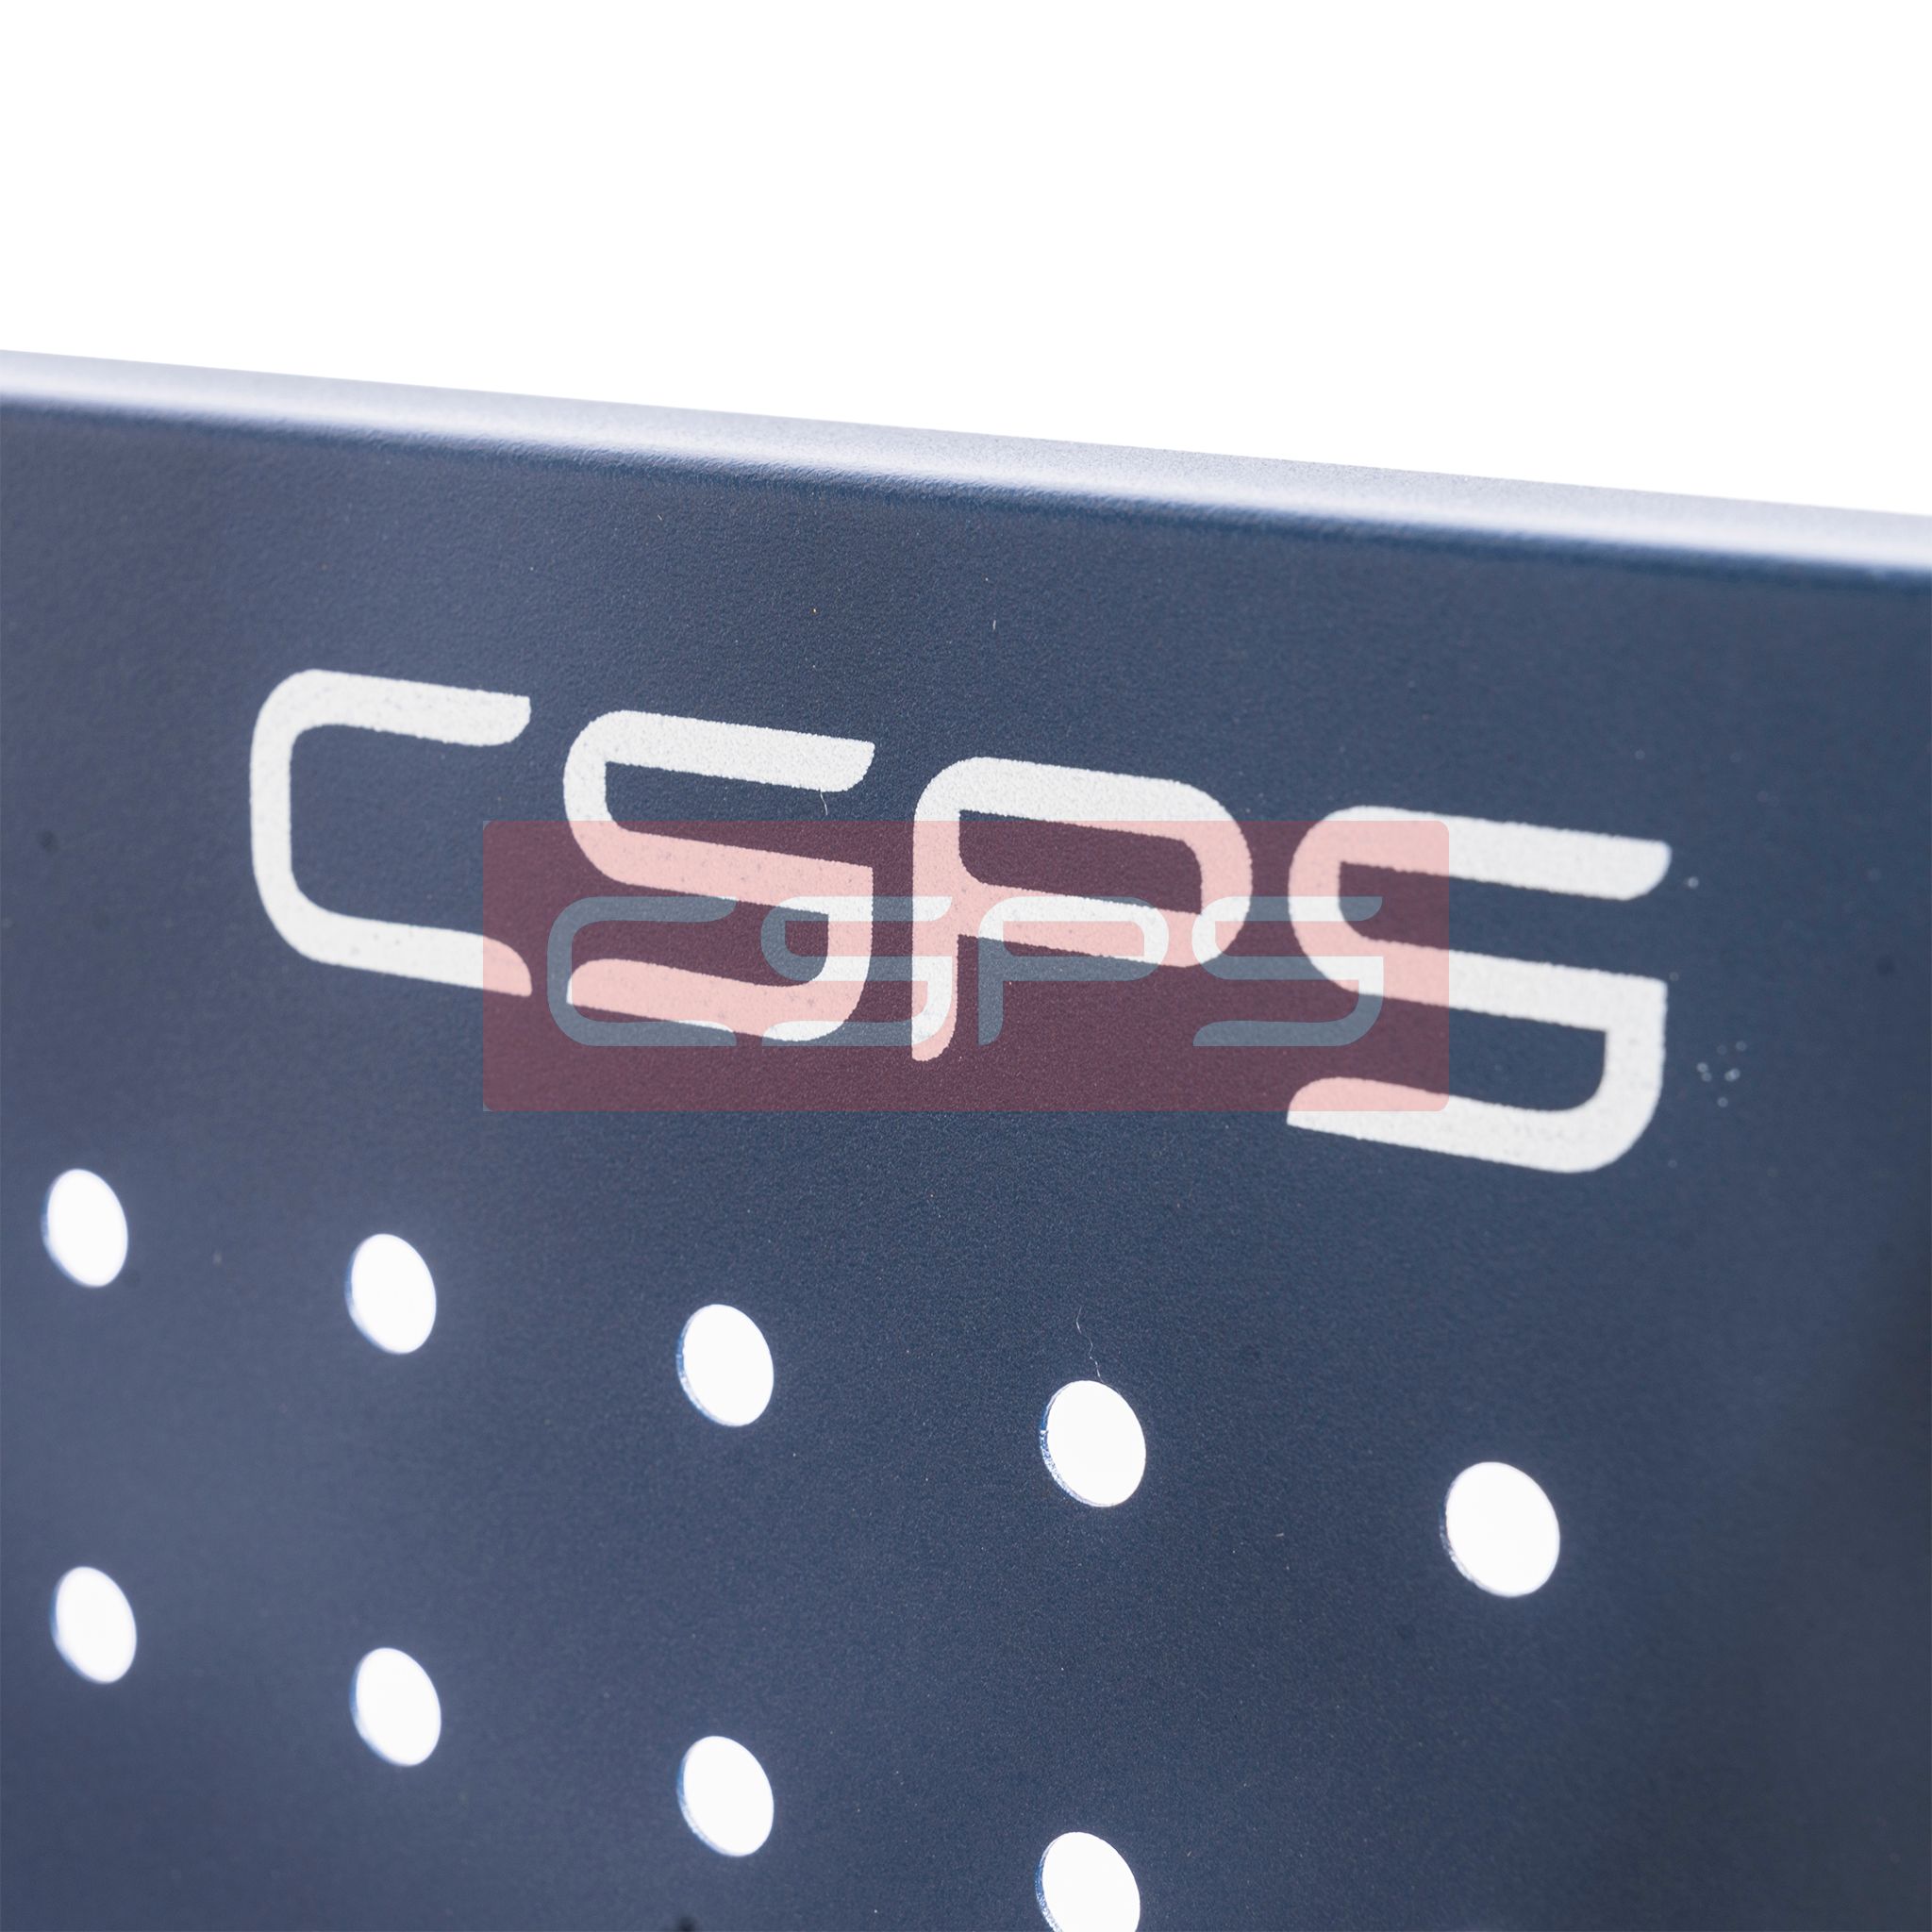  Vách lưới CSPS 76cm màu đen/xanh 